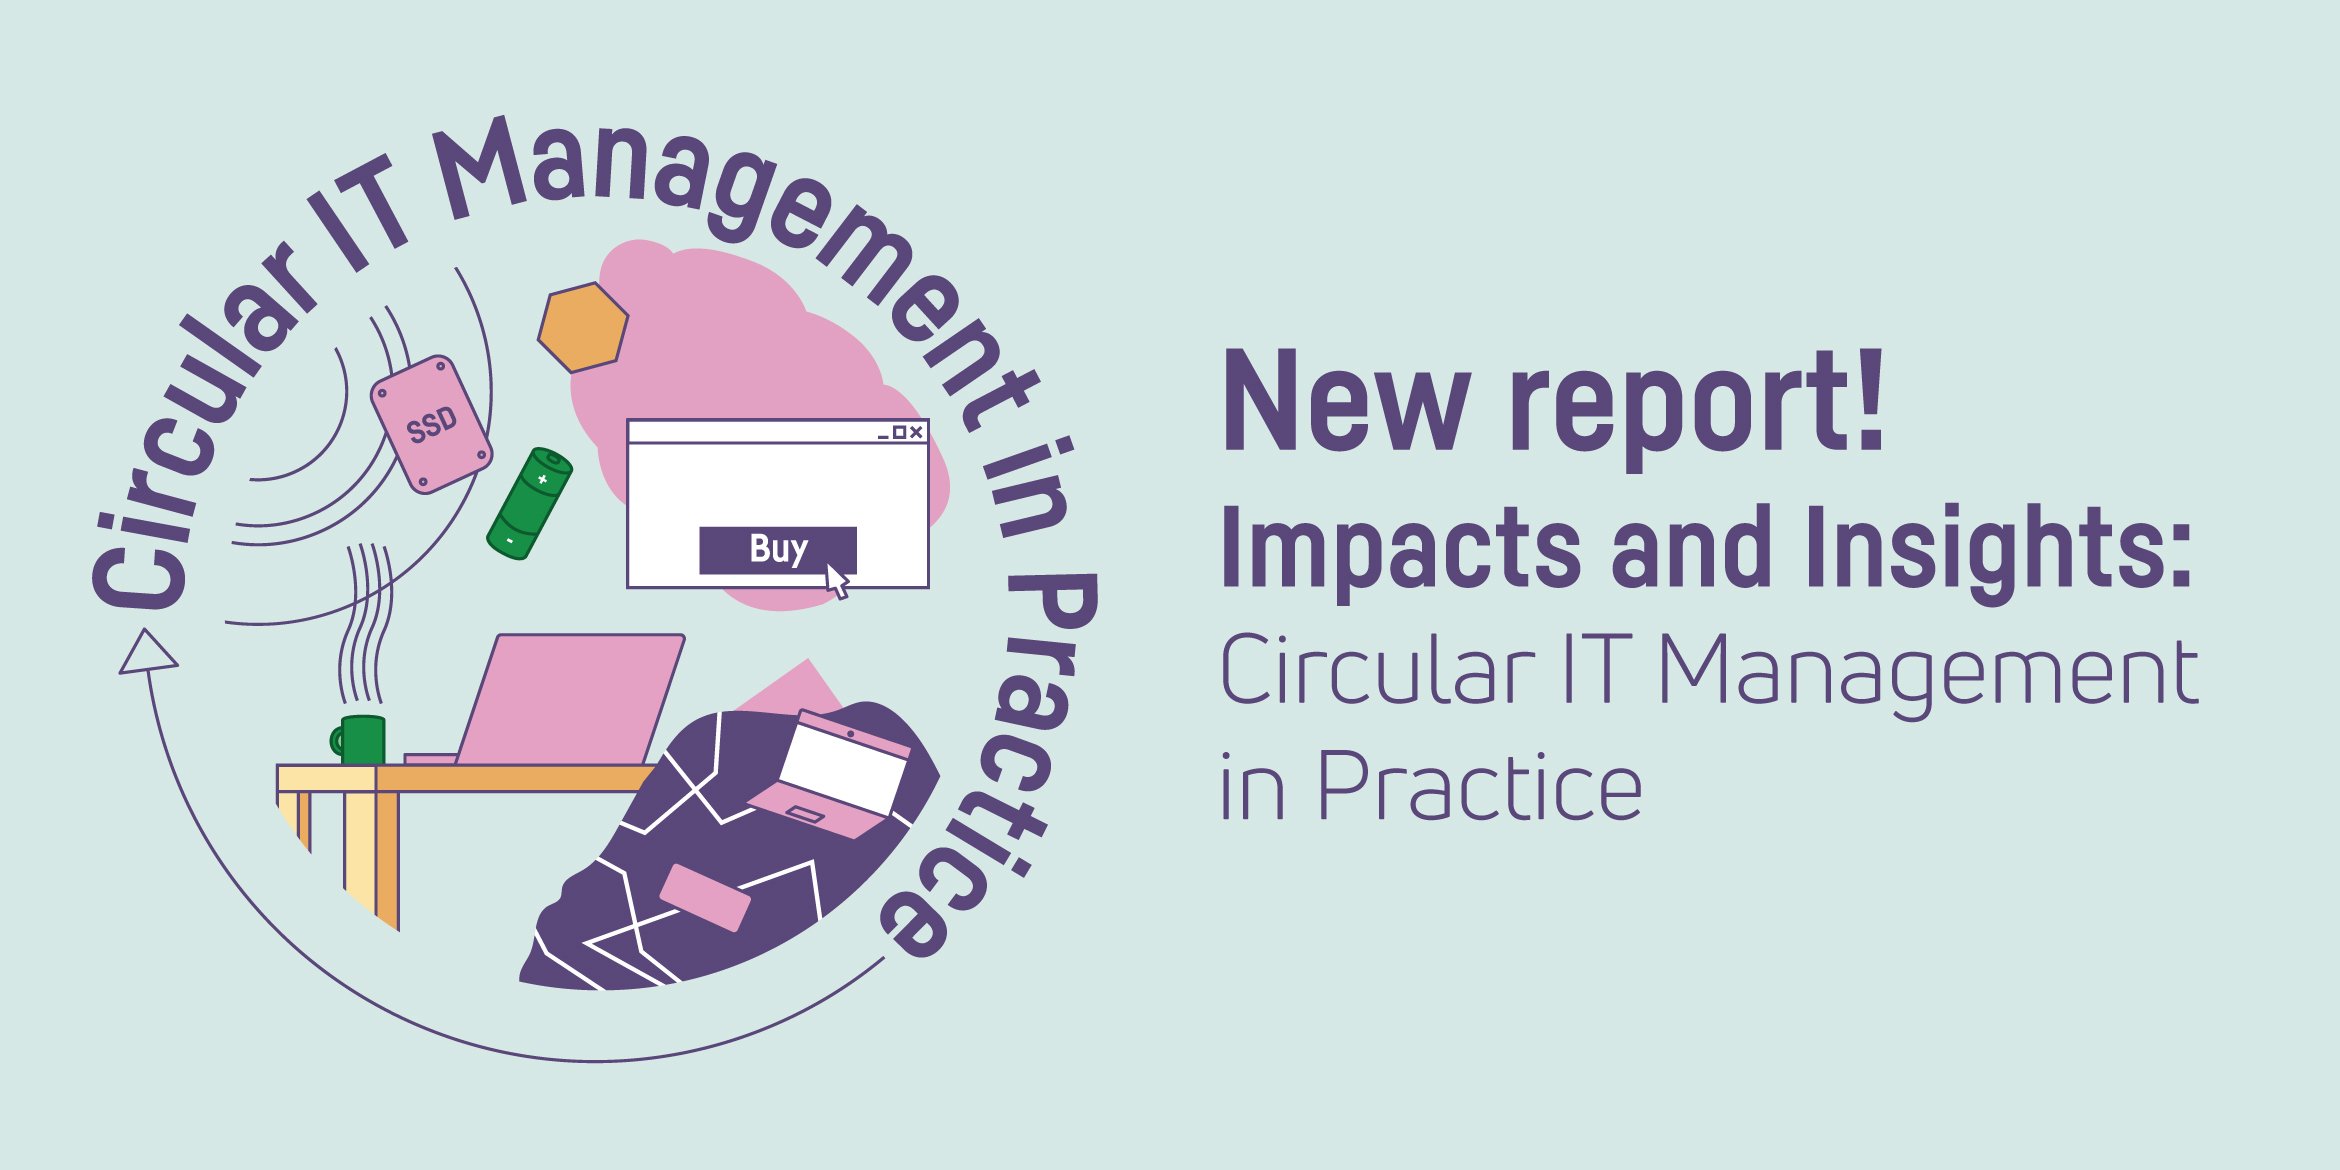 Il nuovo rapporto aiuta le organizzazioni con la gestione circolare dell'IT